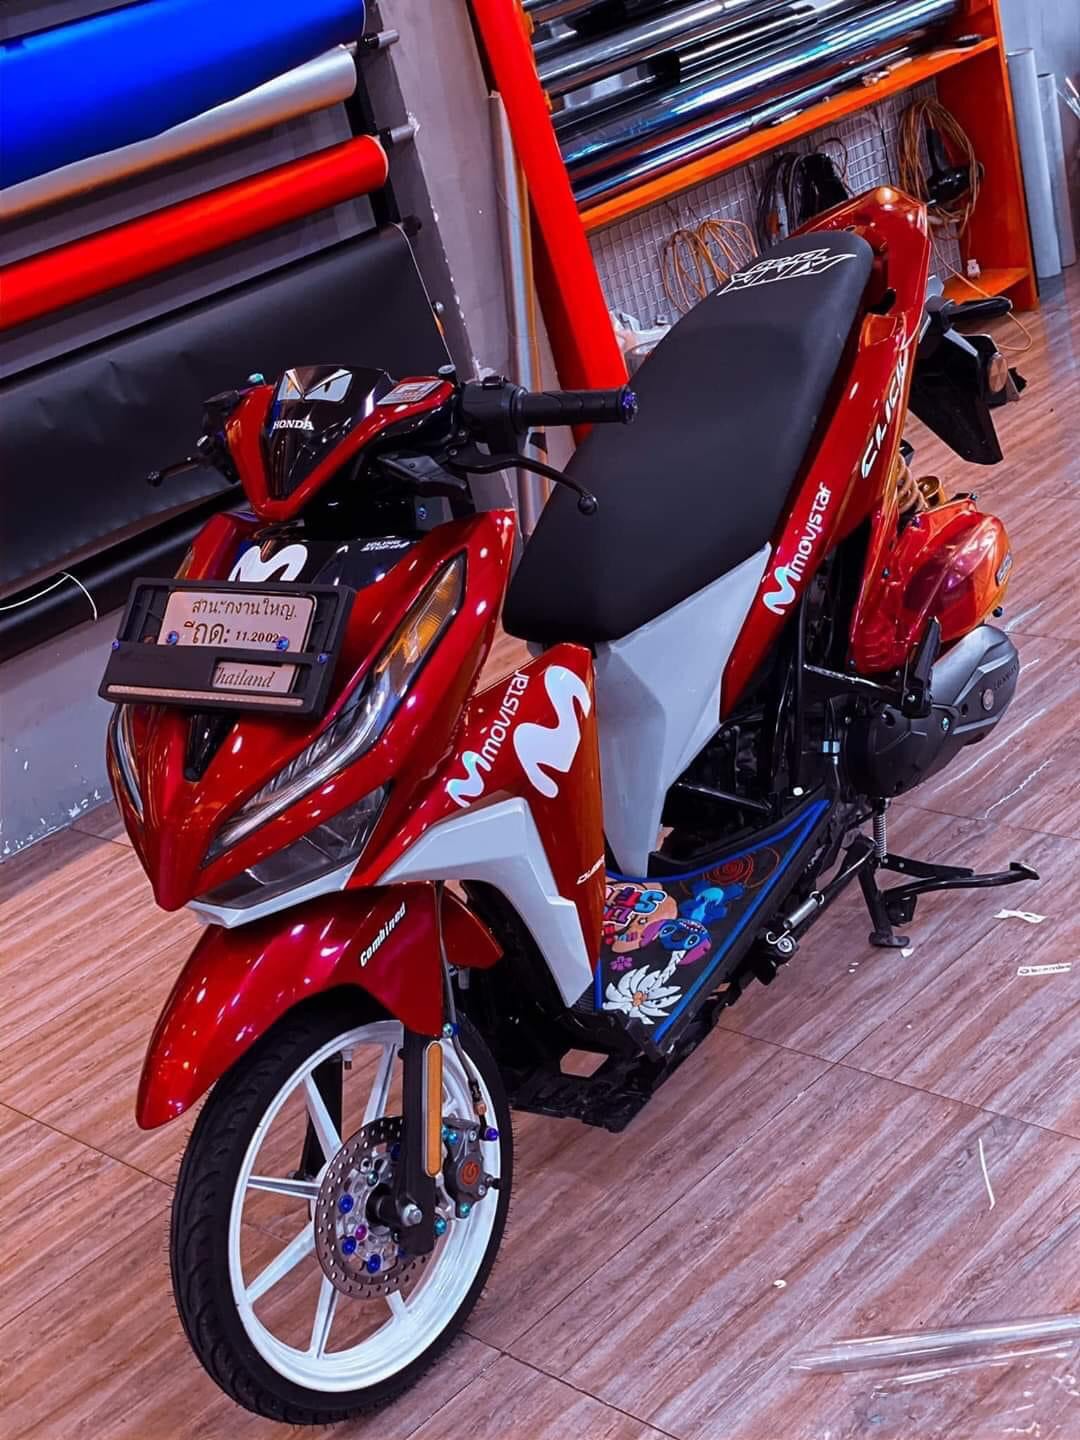 Giá Xe Vario 150 2021 Mới Nhất  Vario 150 Trắng Đỏ Honda Vario 2021 Price  White Red  Quang Ya  YouTube